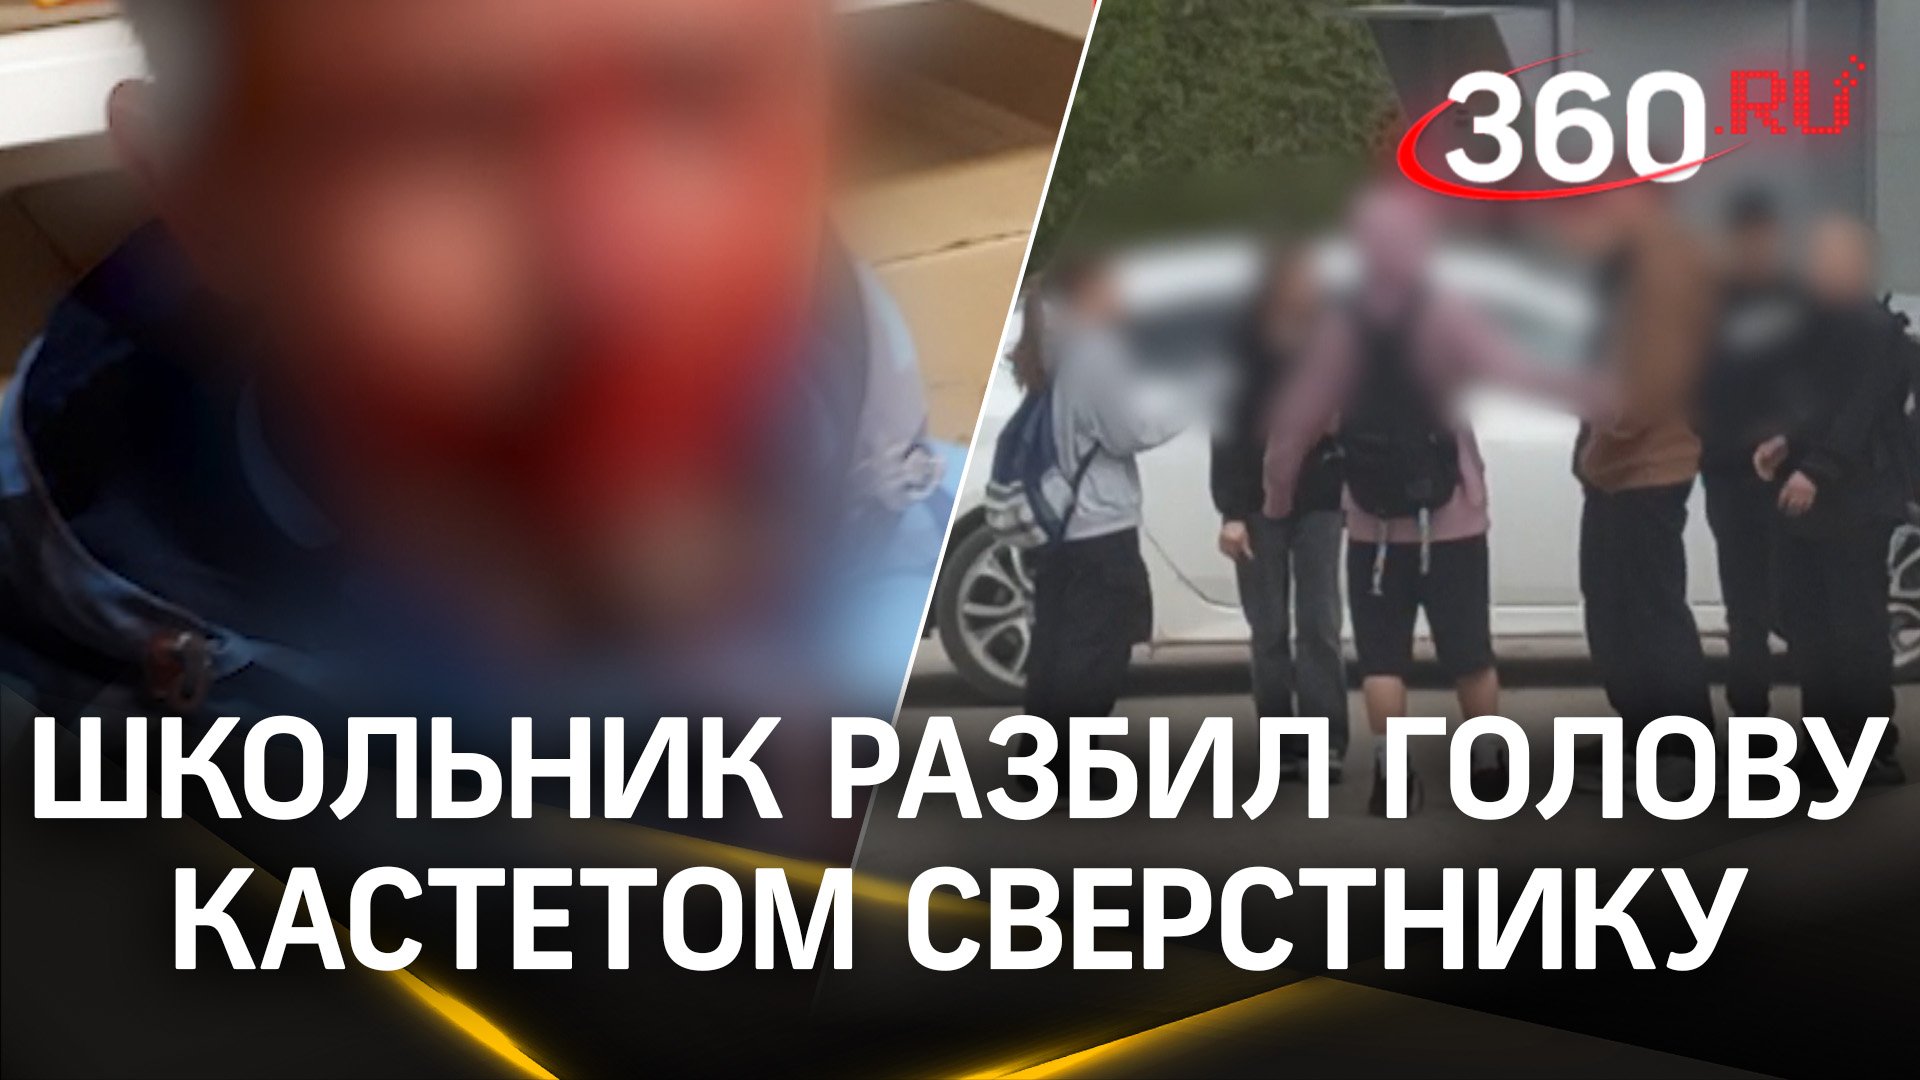 Школьник пробил кастетом голову и сломал нос сверстнику в Пермском крае